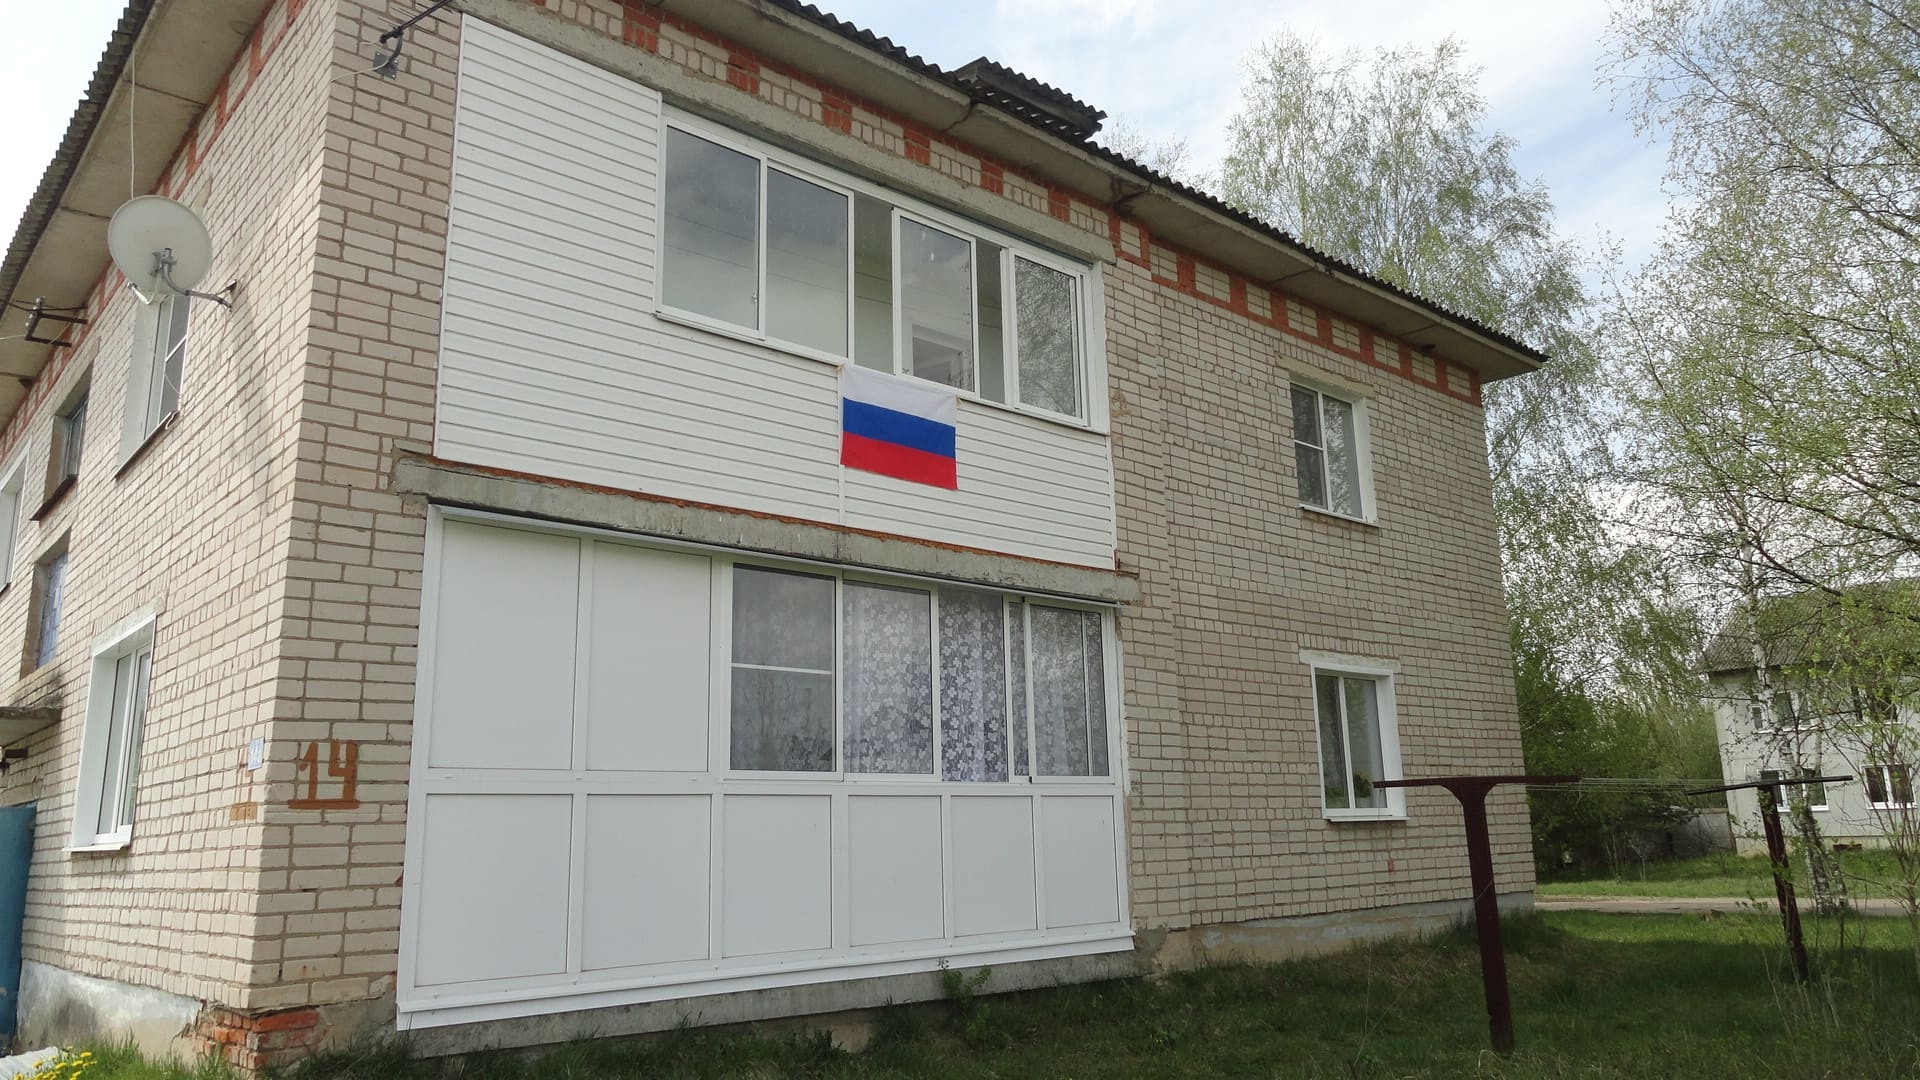 Накануне Дня Победы жители Афанасьевского сельского поселения украсили свои дома государственными флагами